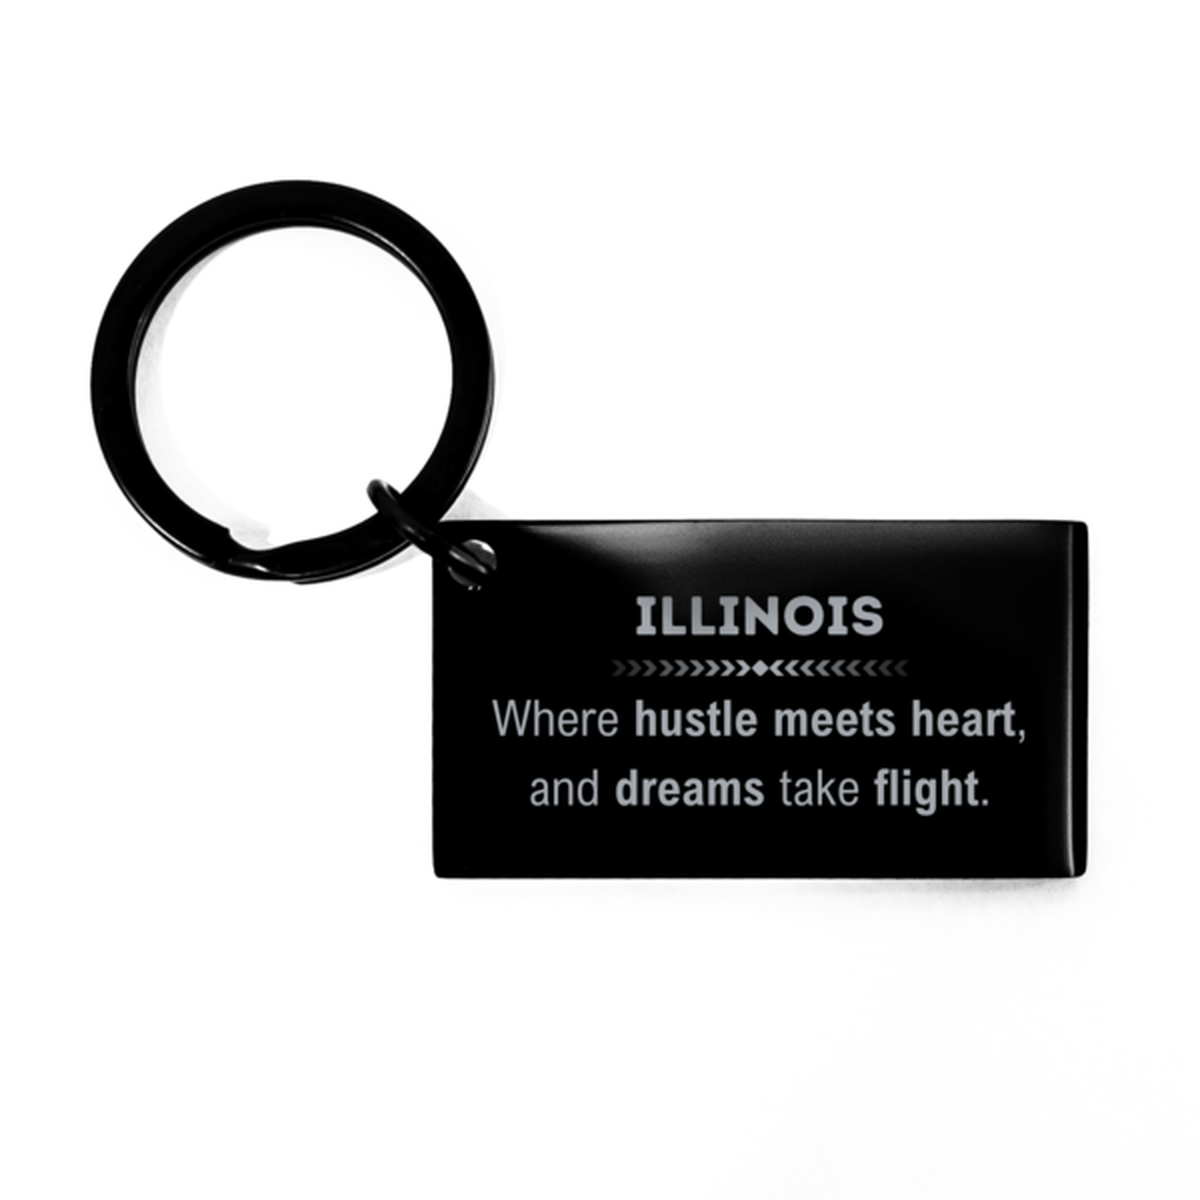 Illinois: Where hustle meets heart, and dreams take flight, Illinois Gifts, Proud Illinois Christmas Birthday Illinois Keychain, Illinois State People, Men, Women, Friends